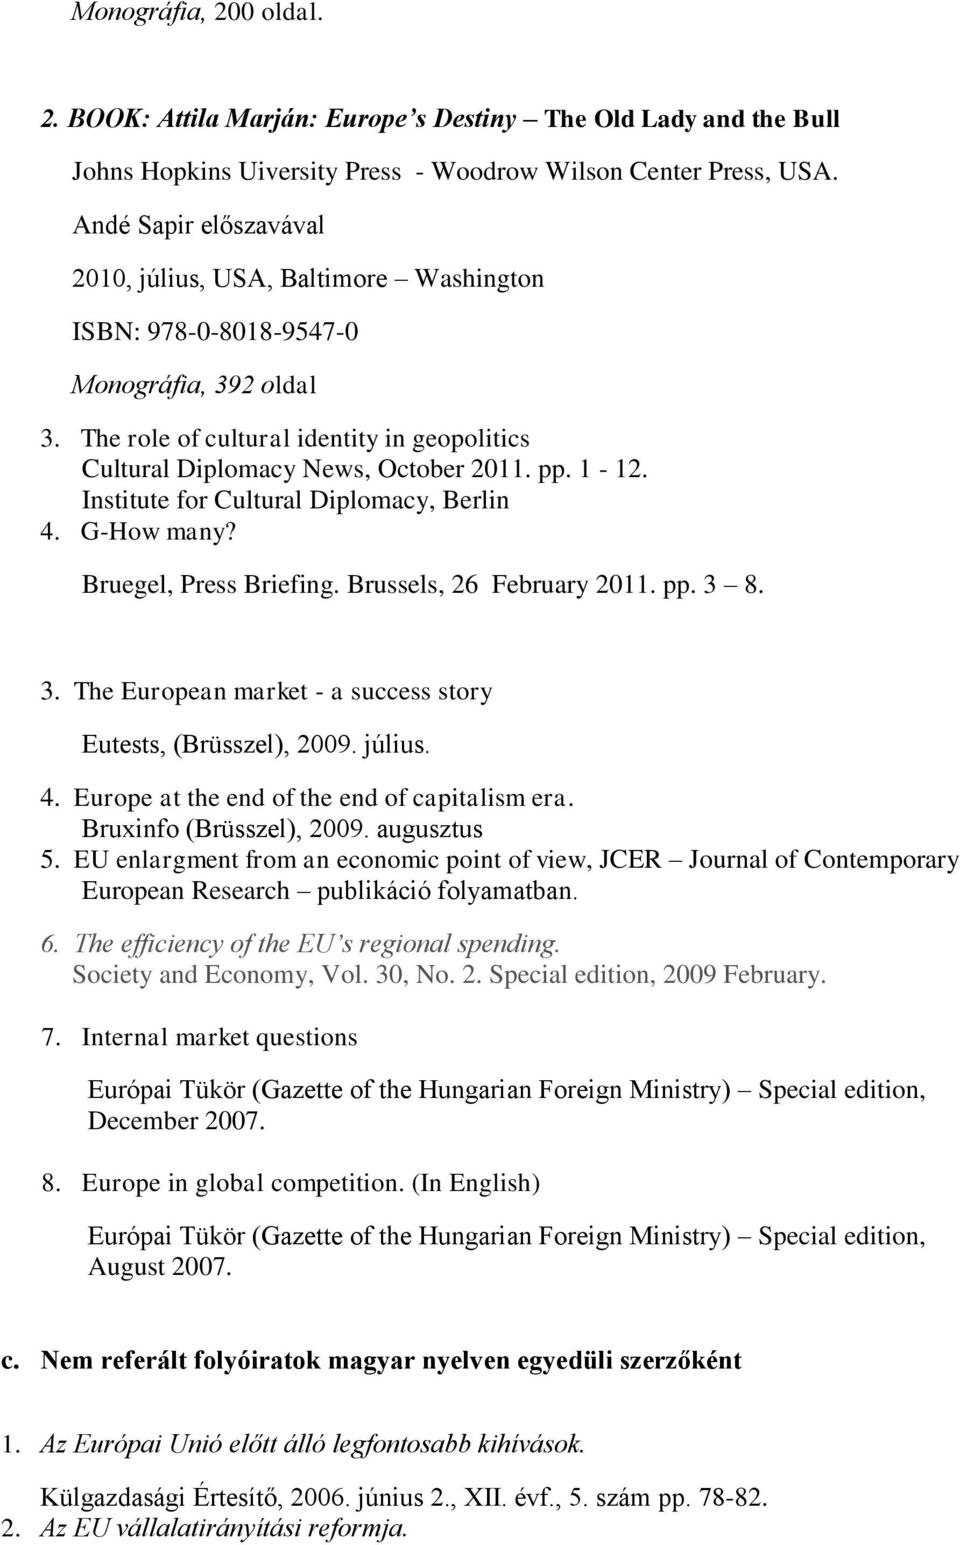 MARJÁN ATTILA PUBLIKÁCIÓK. 1. Attila Marján: The Middle of the Map  Geopolitics of Perceptions John Harper Publishing, London - PDF Ingyenes  letöltés